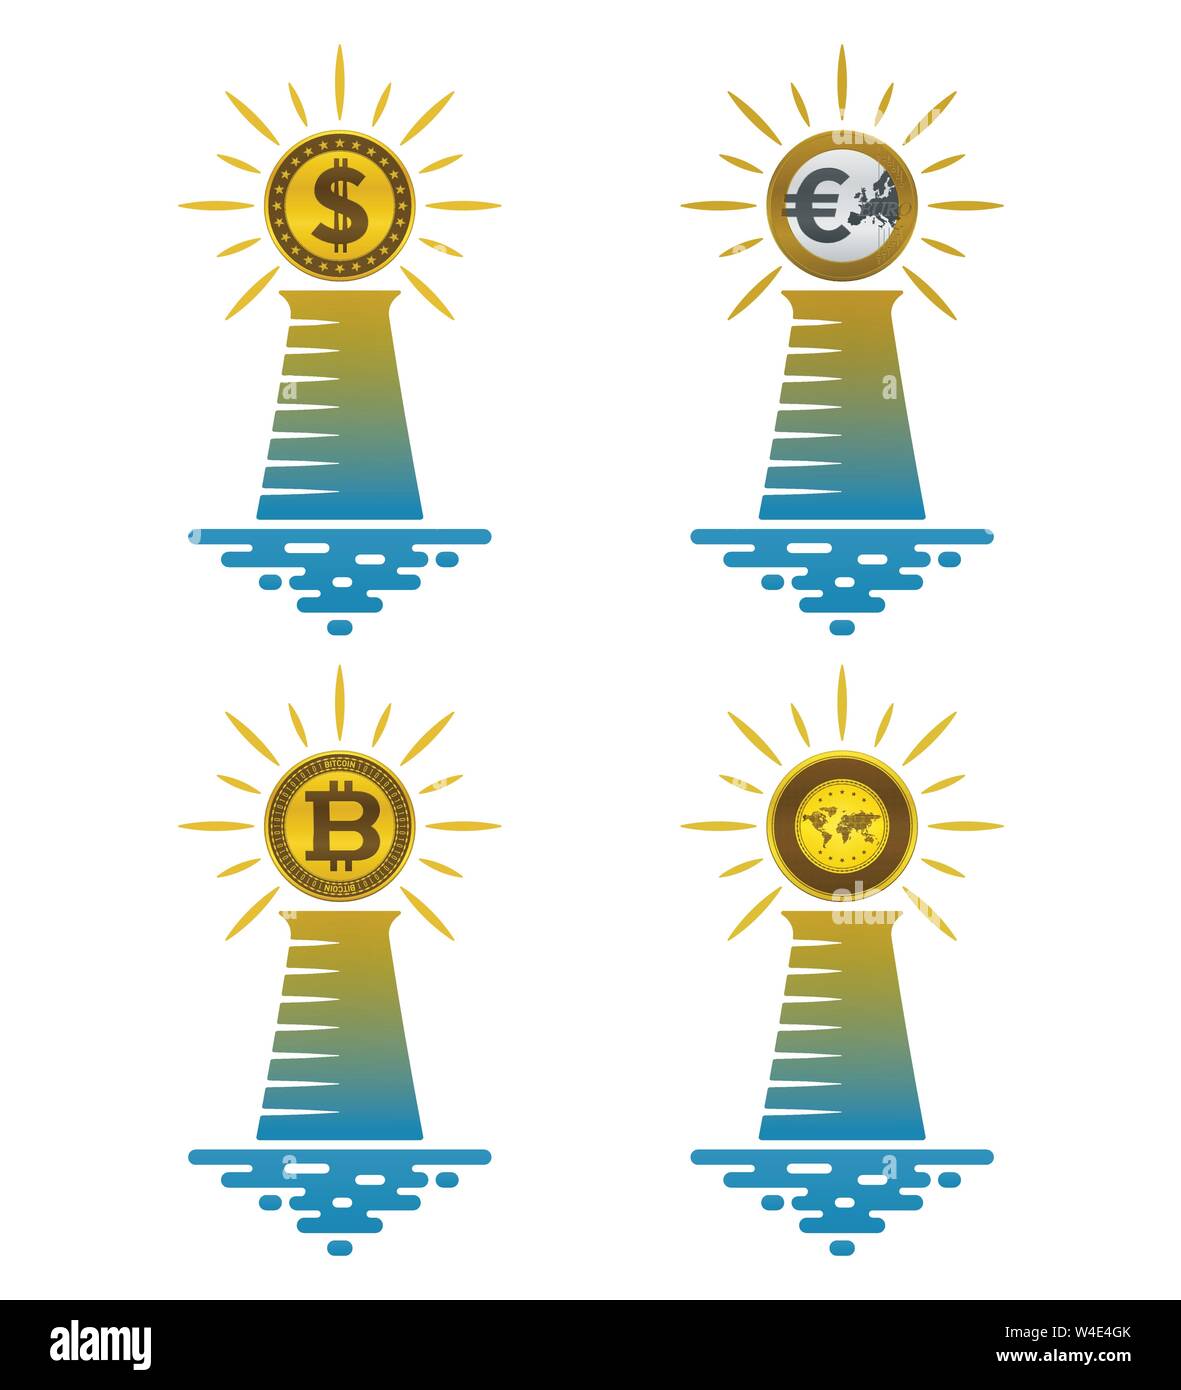 Leuchtturm Symbole mit Münzen auf weißem Hintergrund. Finanz- und nautischen Konzept Design. Stock Vektor